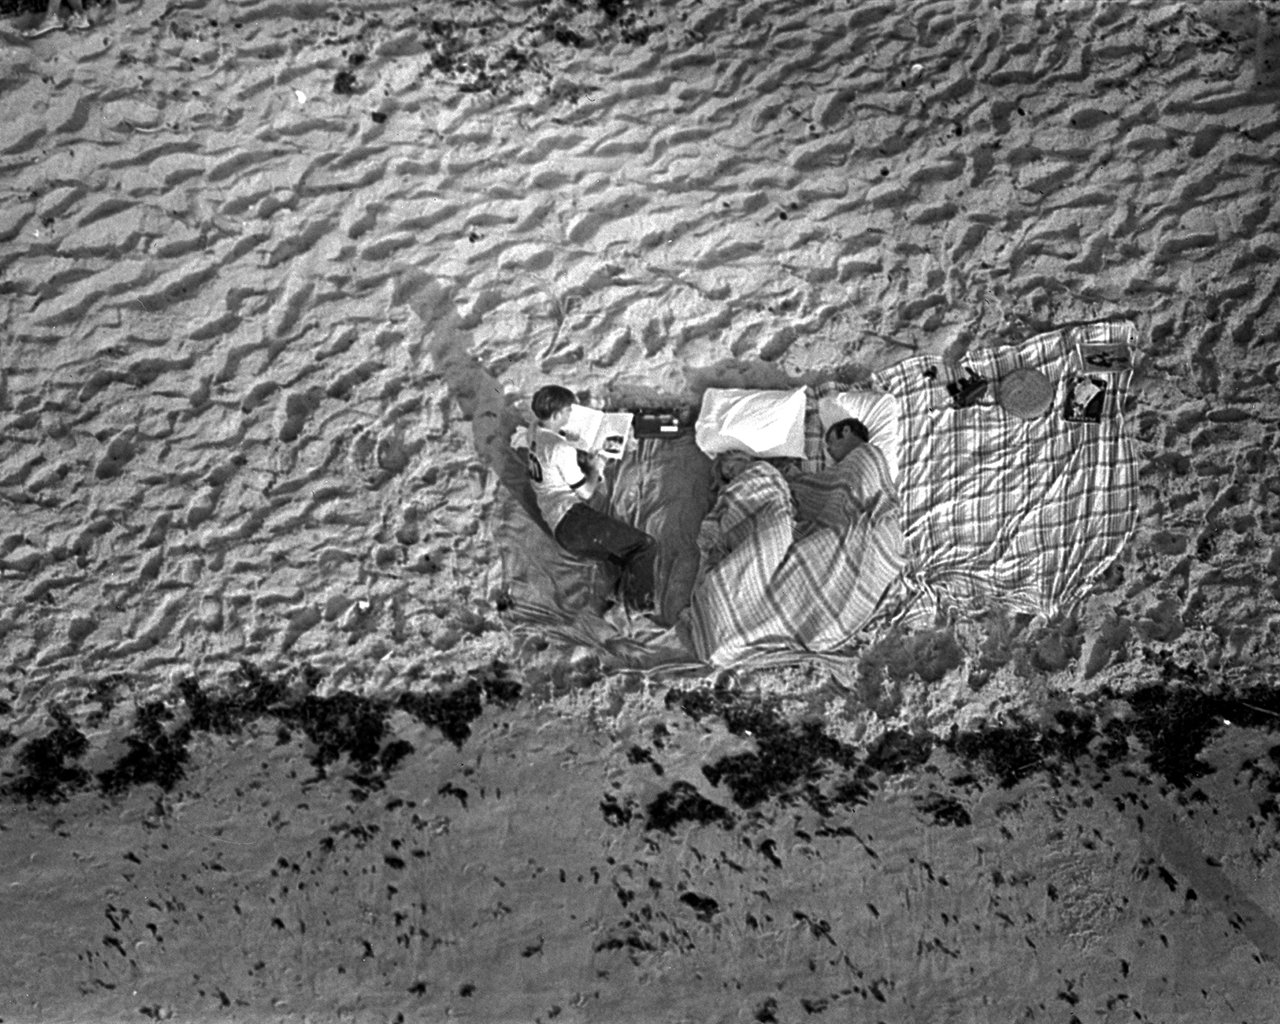 壁纸1280x1024One Giant Leap for Mankind  Apollo 11 Launch Spectators 等待点火升空的观众壁纸 阿波罗11号登月40周年纪念壁纸壁纸 阿波罗11号登月40周年纪念壁纸图片 阿波罗11号登月40周年纪念壁纸素材 人文壁纸 人文图库 人文图片素材桌面壁纸